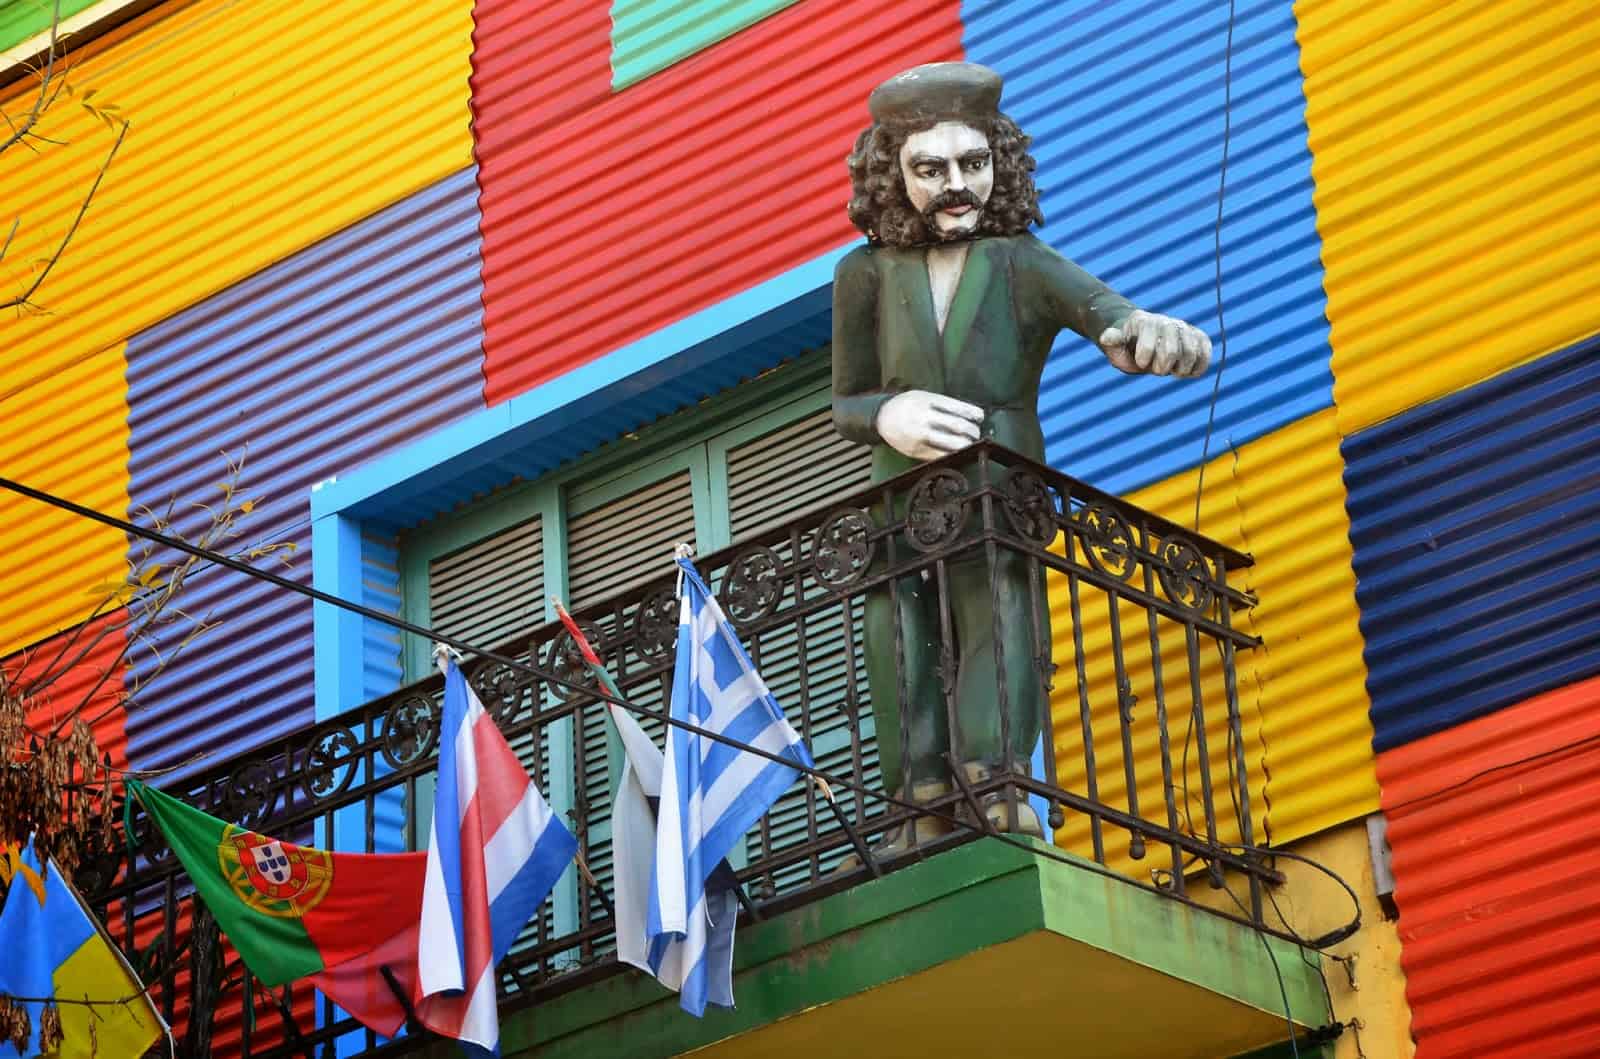 Che Guevara in La Boca, Buenos Aires, Argentina